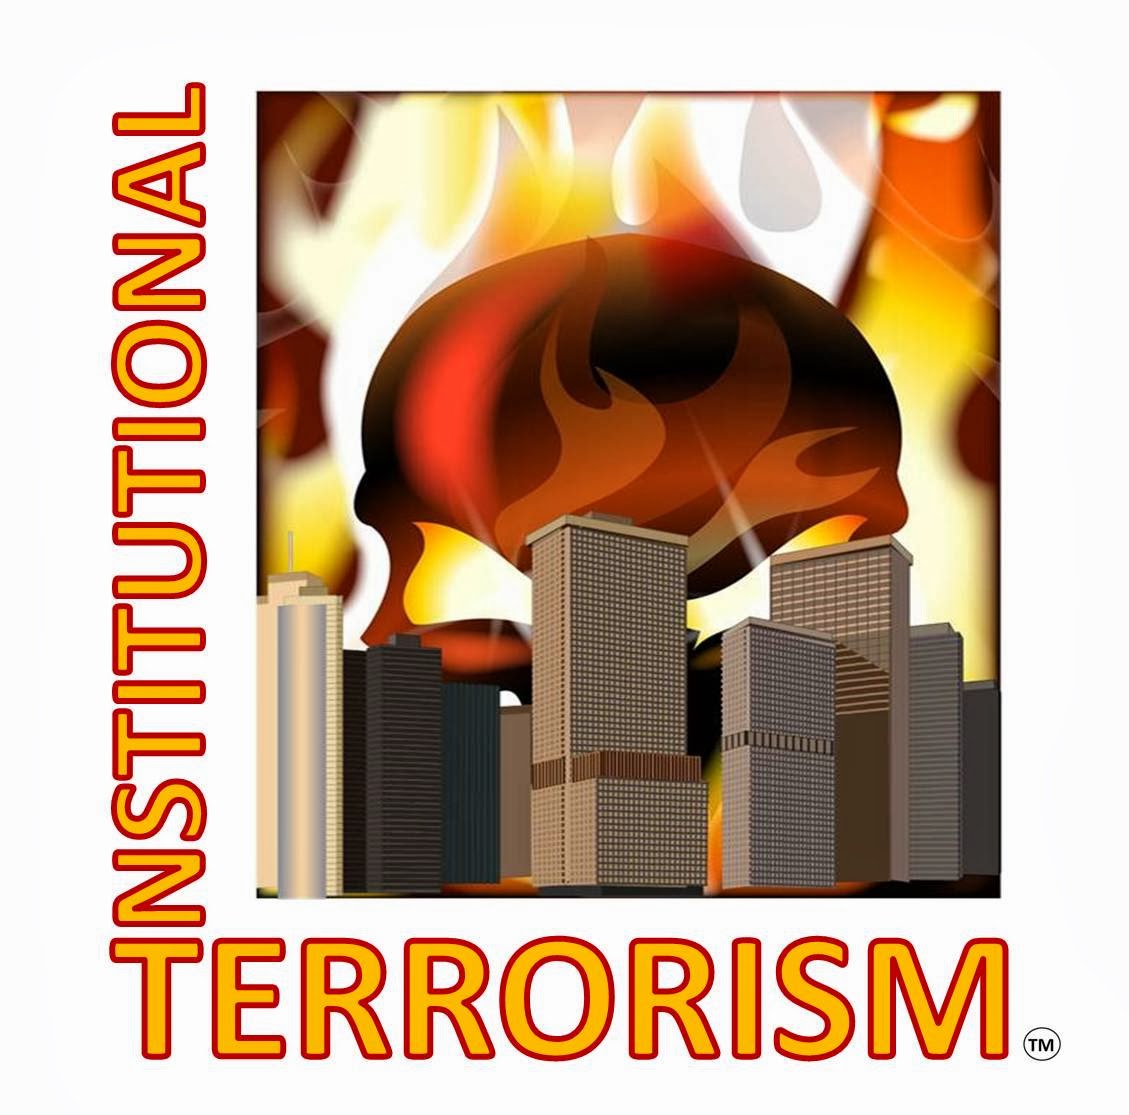 InstitutionalTerrorism - Discrimination and Retaliation